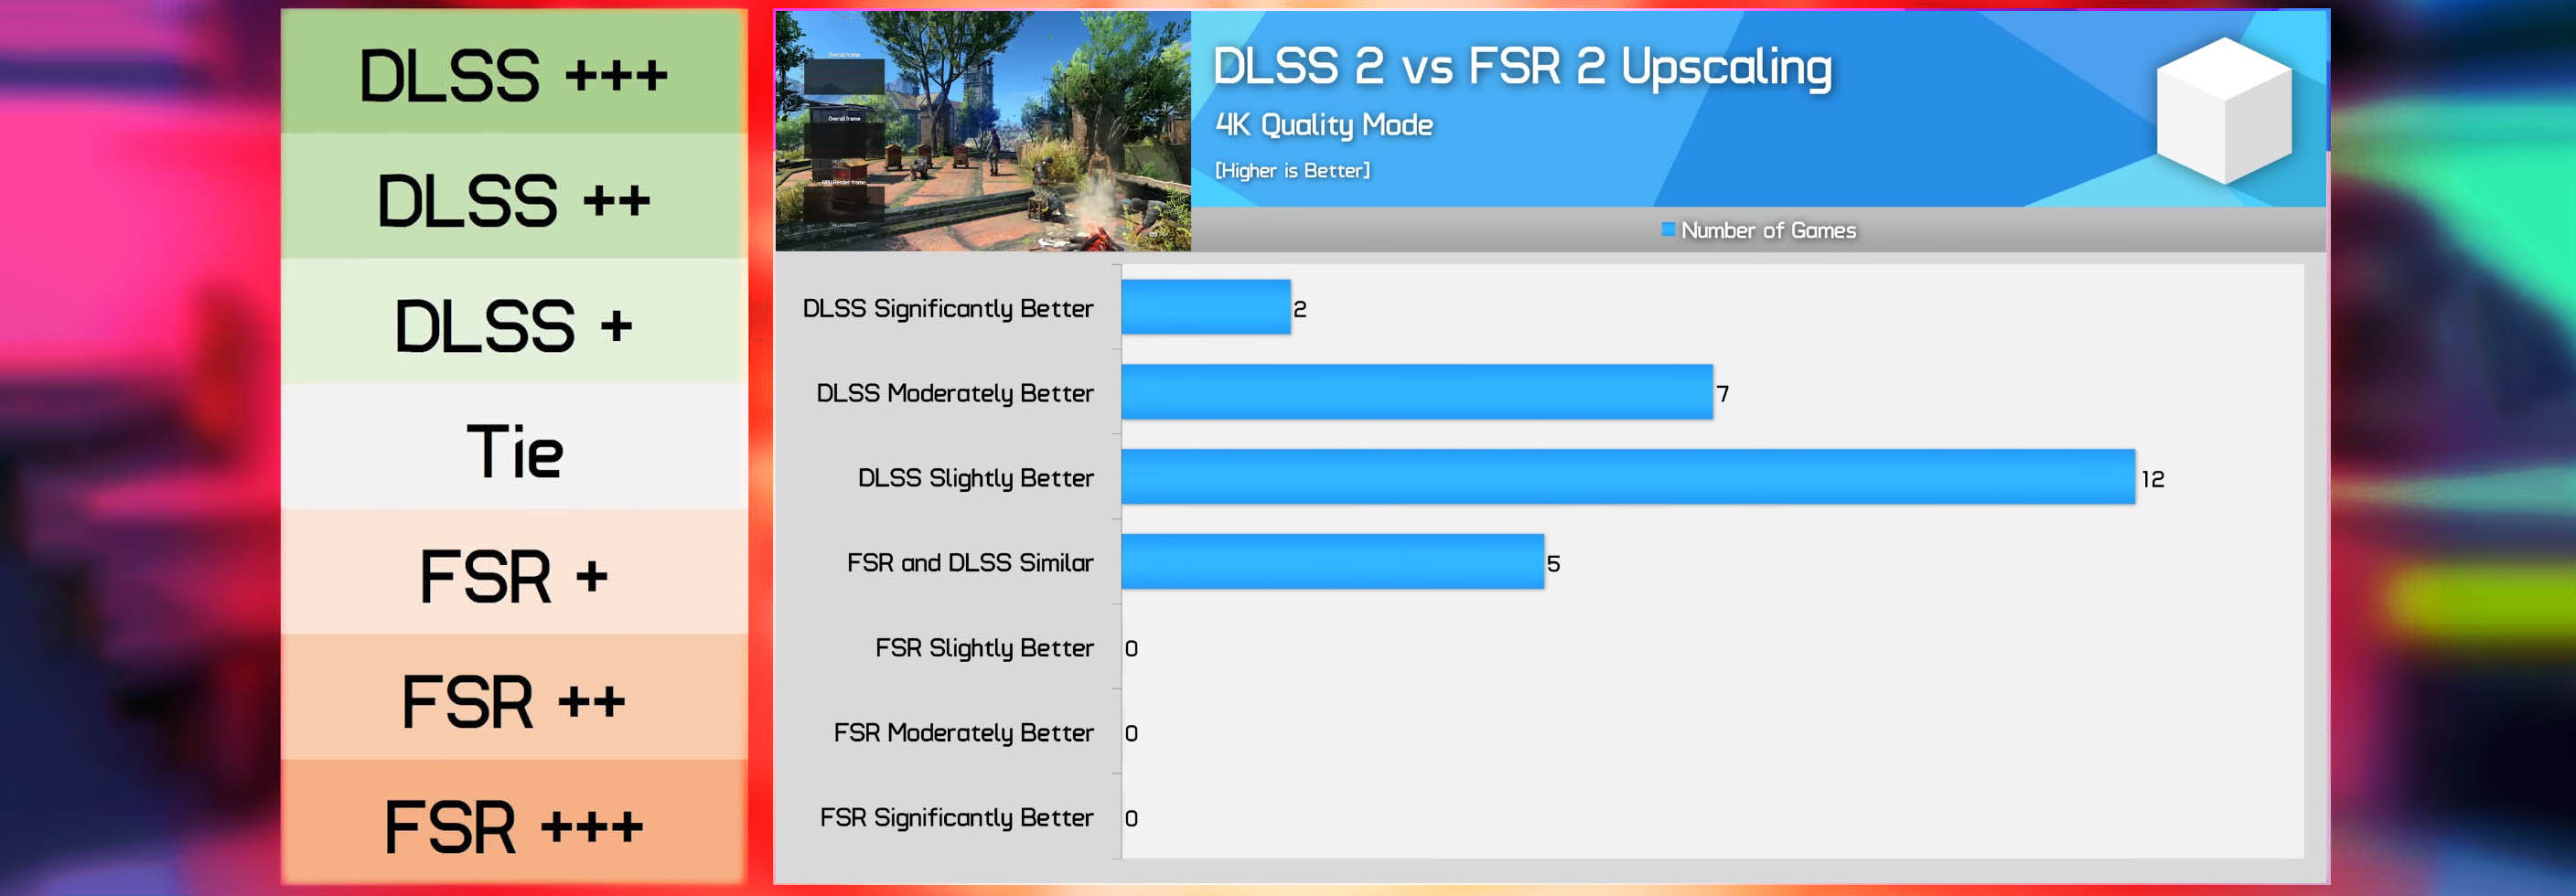 مقایسه فناوری های DLSS و FSR 